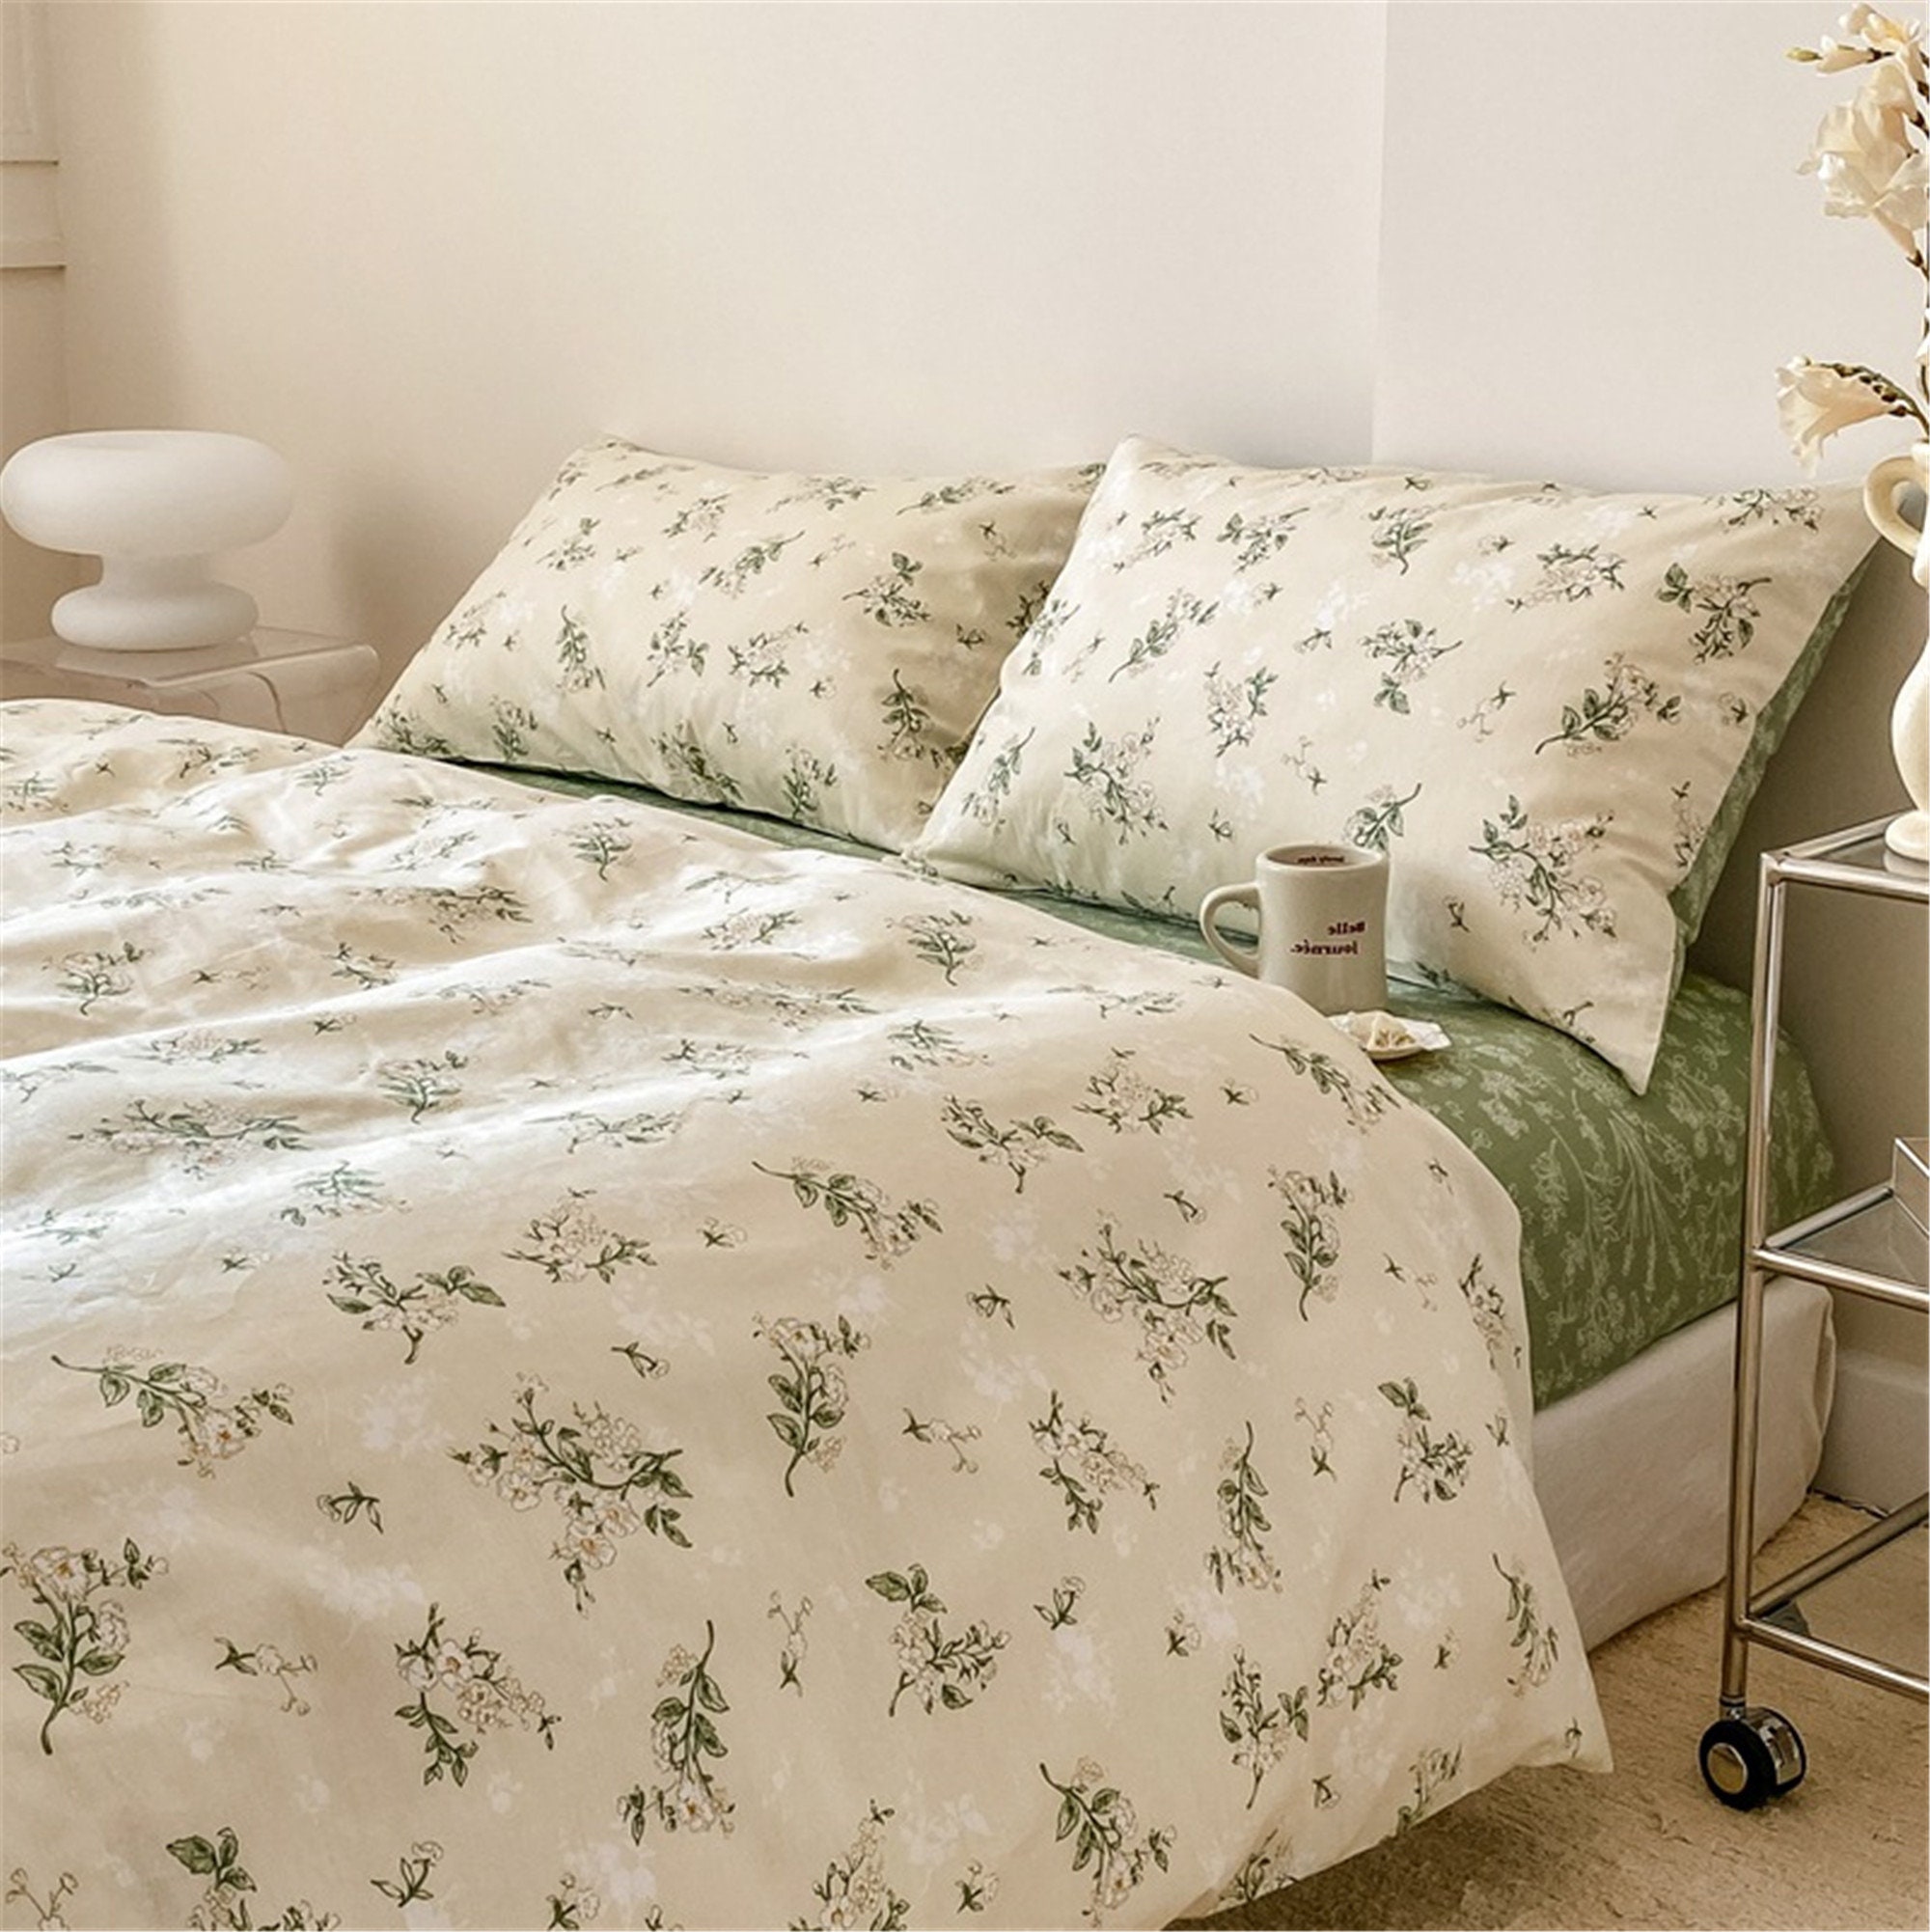 Floral Duvet Cover Set, White Green Cotton Duvet Cover, Flower